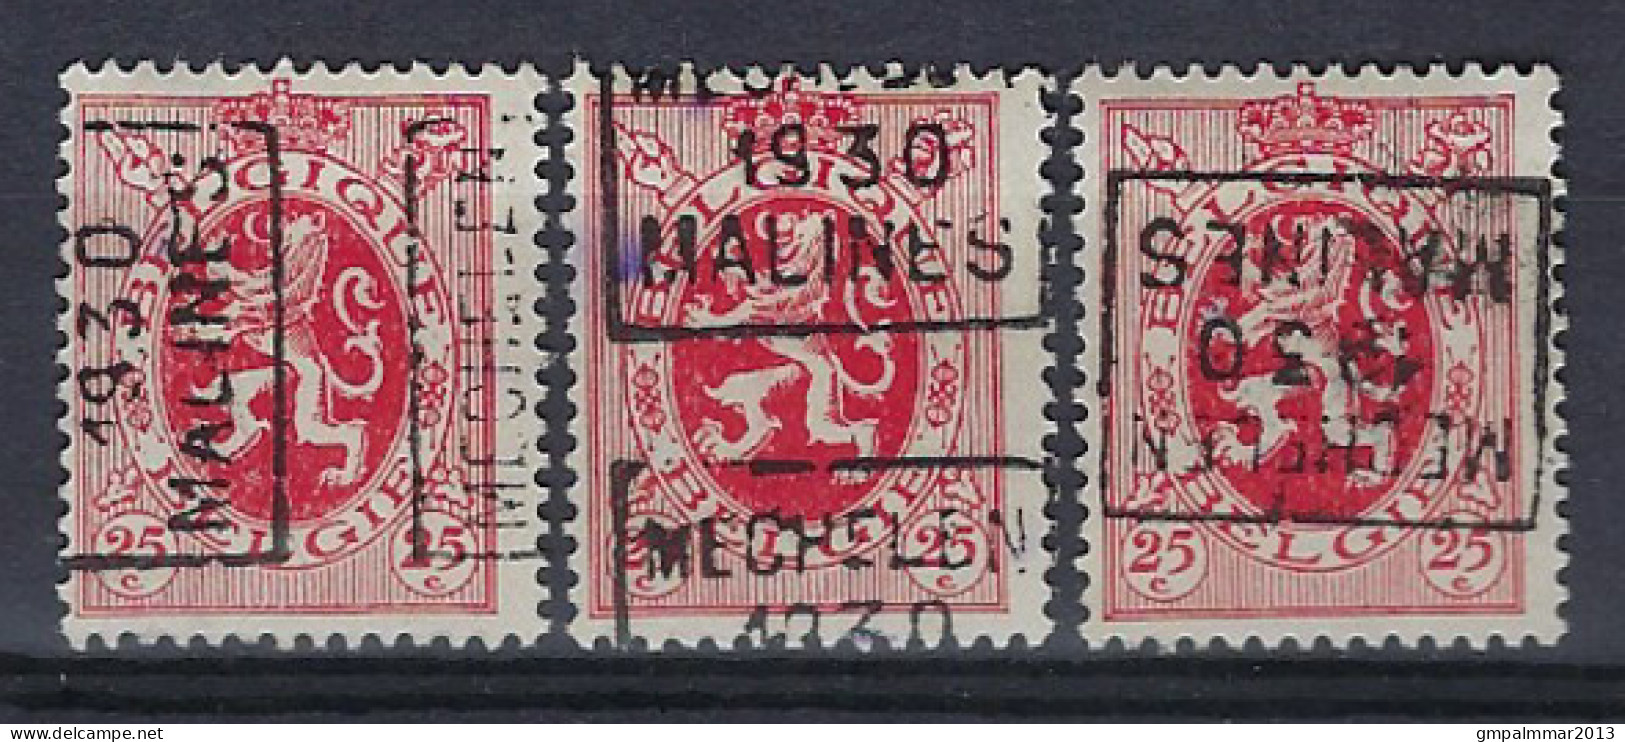 Zegel Nr. 282 Voorafgestempeld Nr. 5919  A + C + D   MECHELEN   1930  MALINES  ;  Staat Zie Scan ! ​LOT 264 - Rollo De Sellos 1930-..